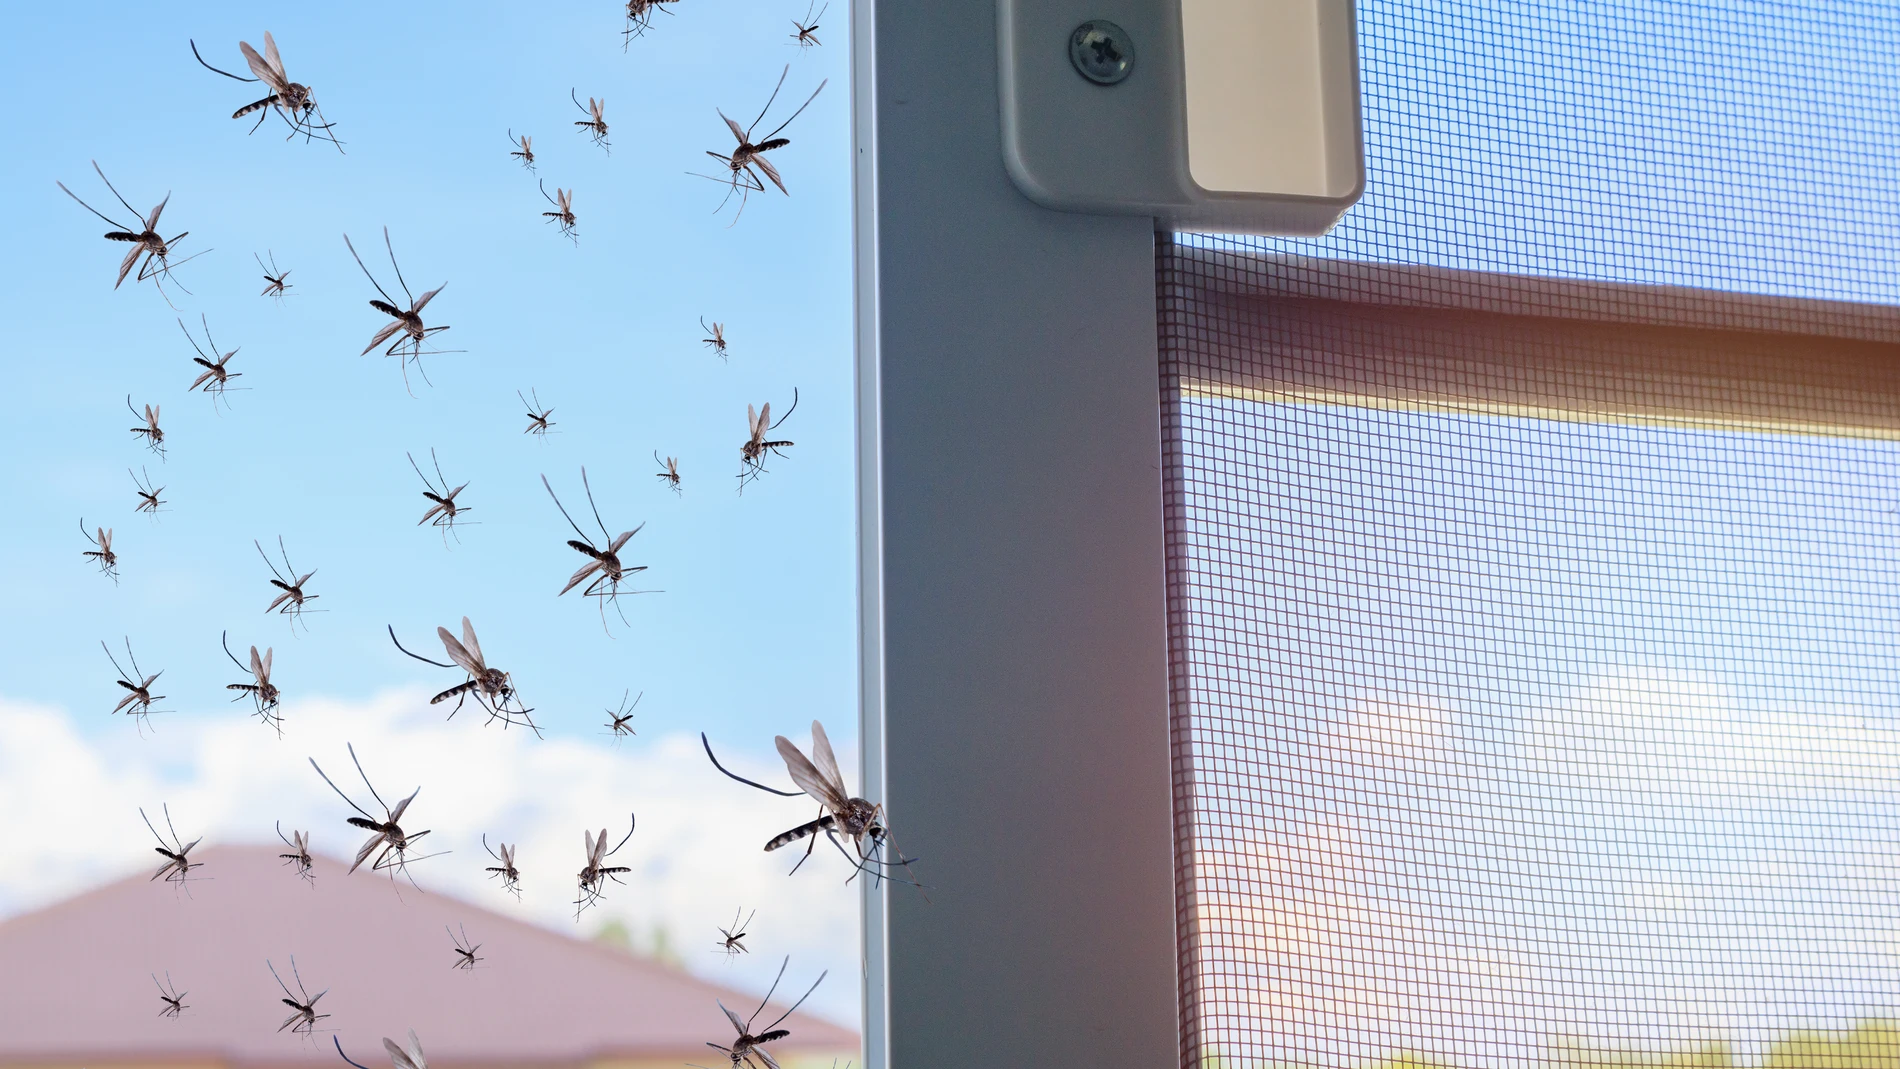 Los mosquitos prefieren picar en los pies o los gemelos, y se sienten atraídos por compuestos como el dióxido de carbono